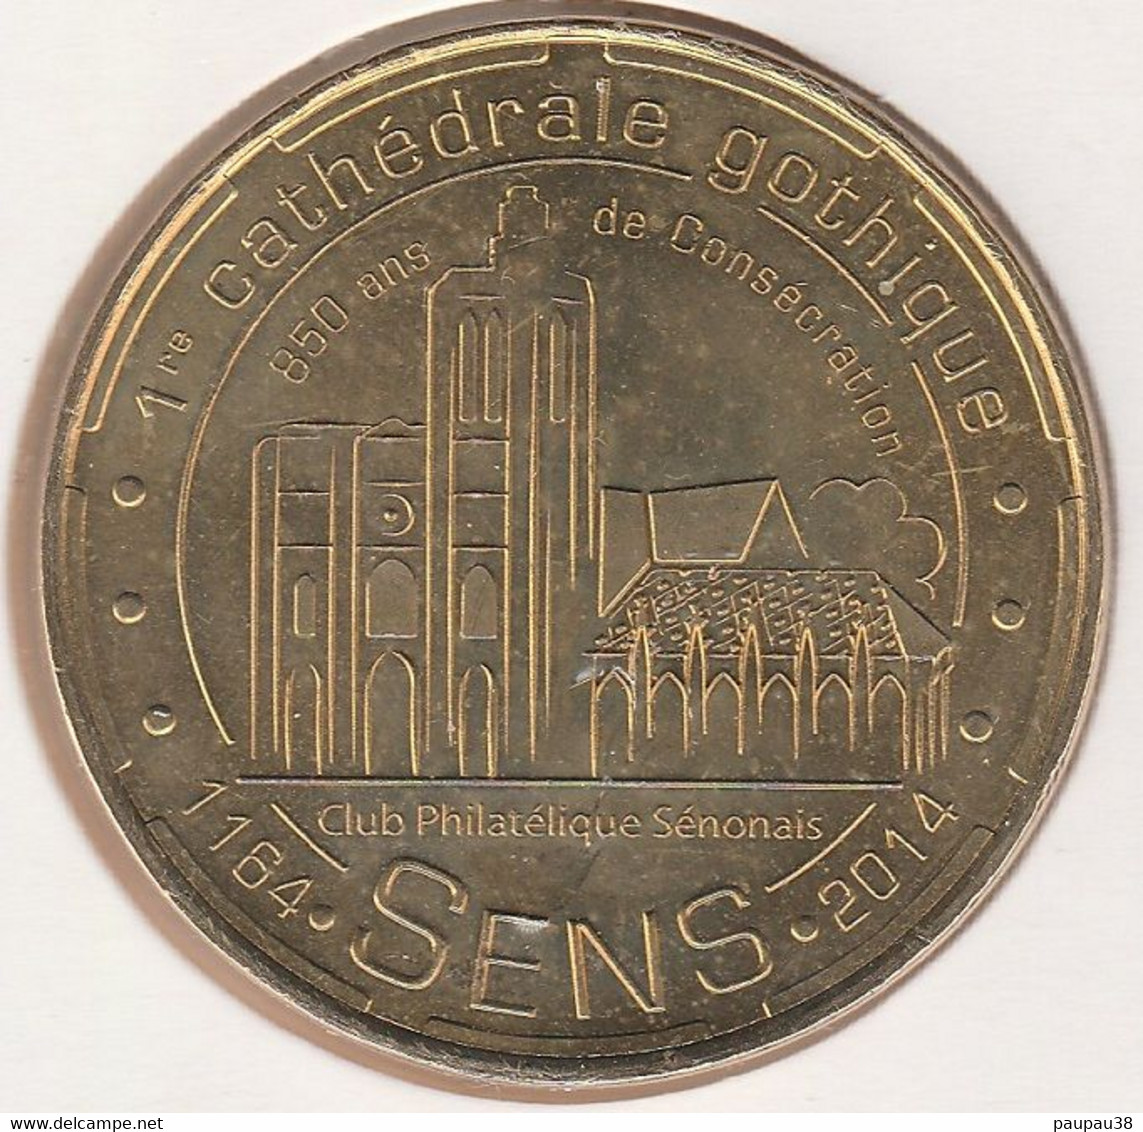 MONNAIE DE PARIS 2014 - 89 SENS 1re Cathédrale Gothique 1164-2014 - 2014